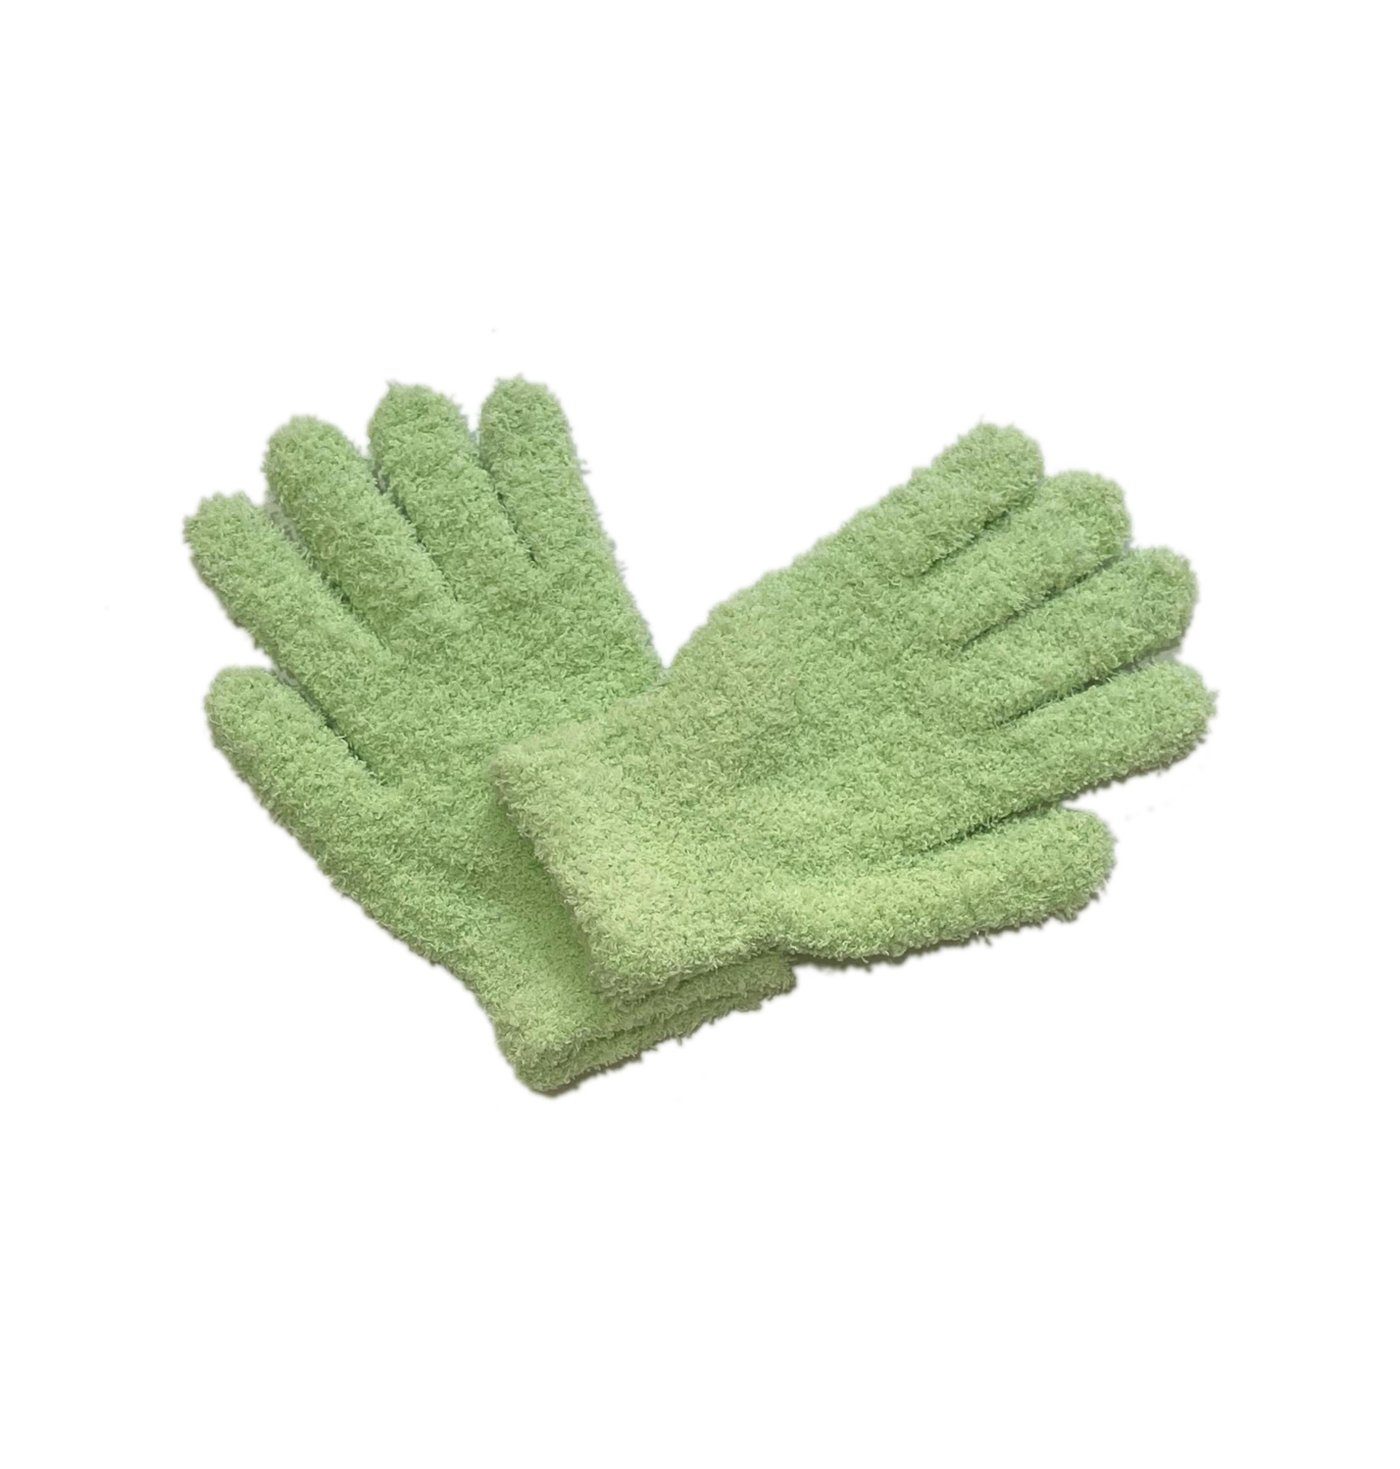 Uana Strickhandschuhe Coral Velvet Candy Colour Damenhandschuhe, Plüschhandschuhe grün